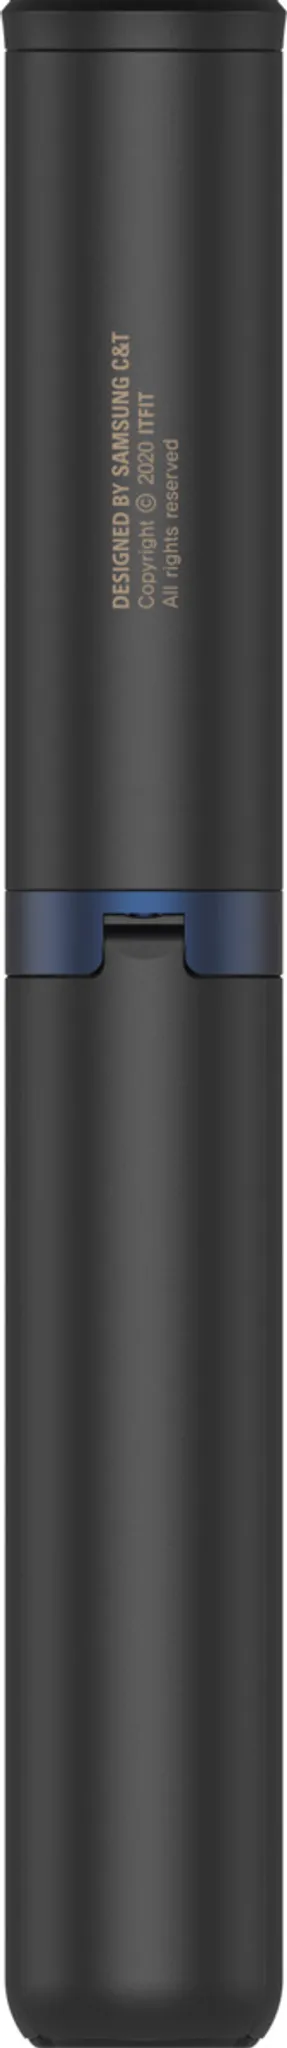 Trade-Shop Bluetooth Selfie Stick Stab Teleskop Stange Monopod Verlängerung für Samsung Galaxy S6 Edge Plus S6 S5 S4 S3 S2 Mini i9300 i9500 G900 G920 23cm - 100cm 